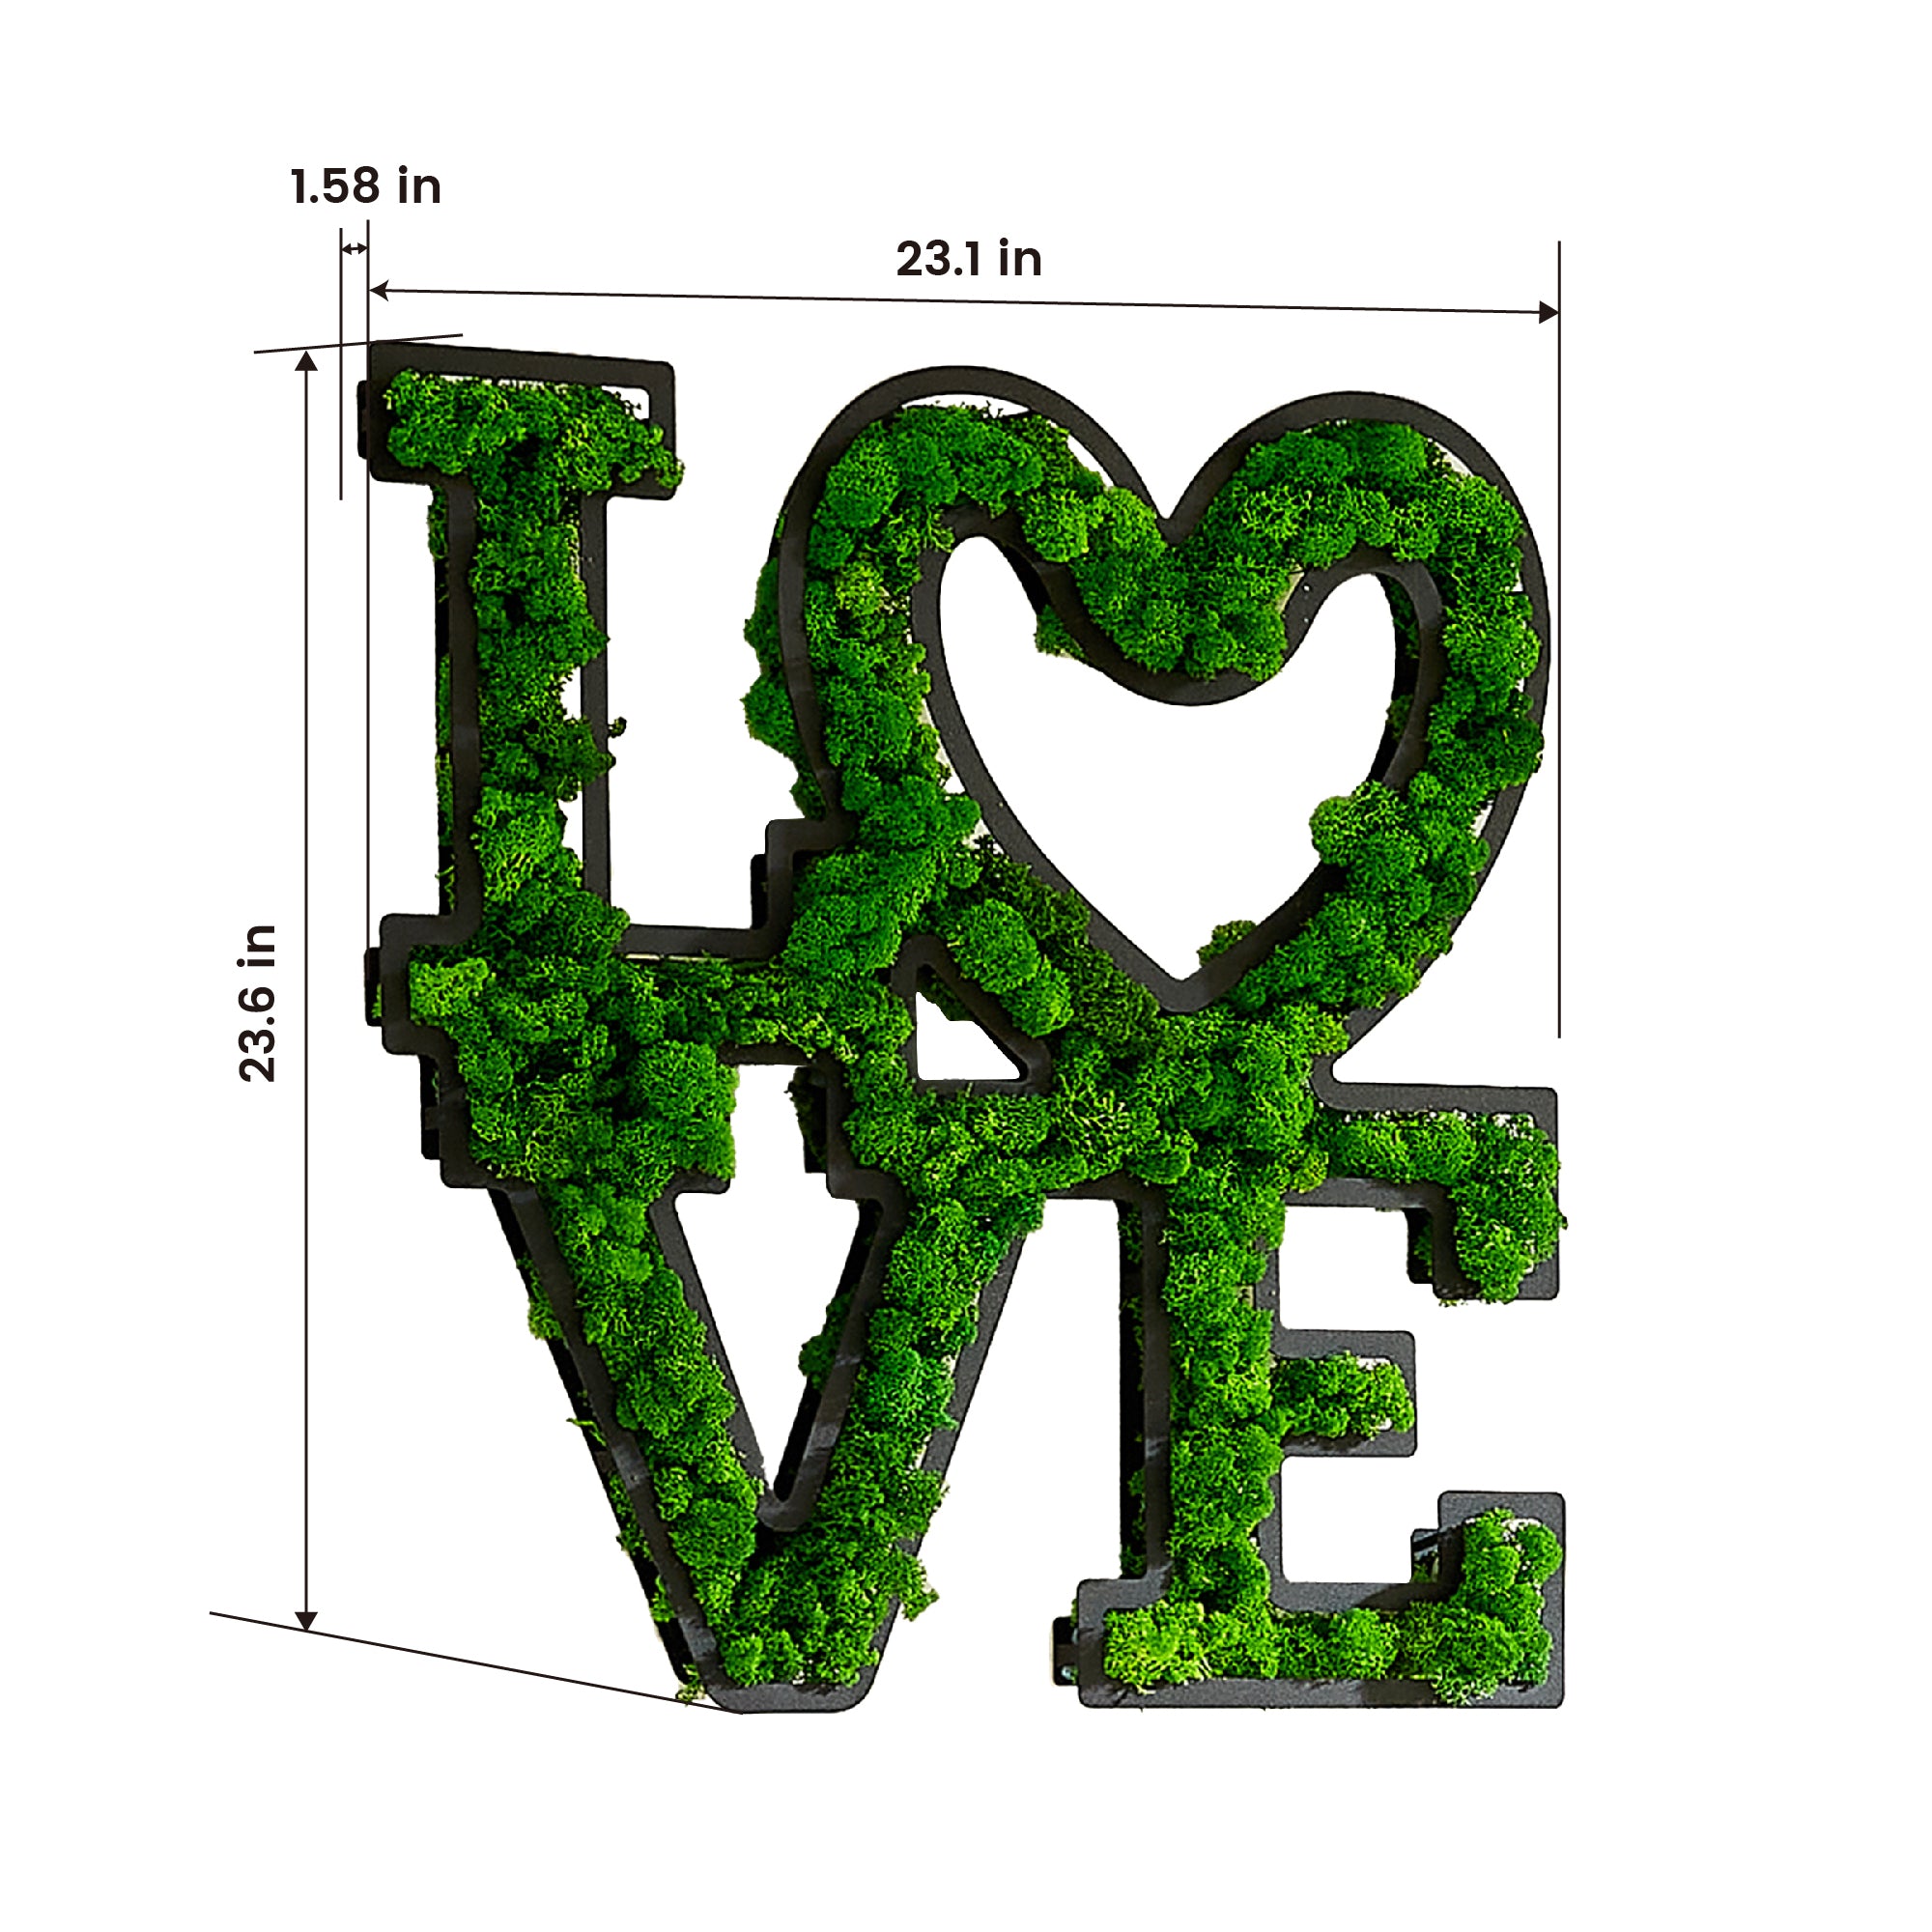 LOVE Letter Art Moss Wall Decor green-iron